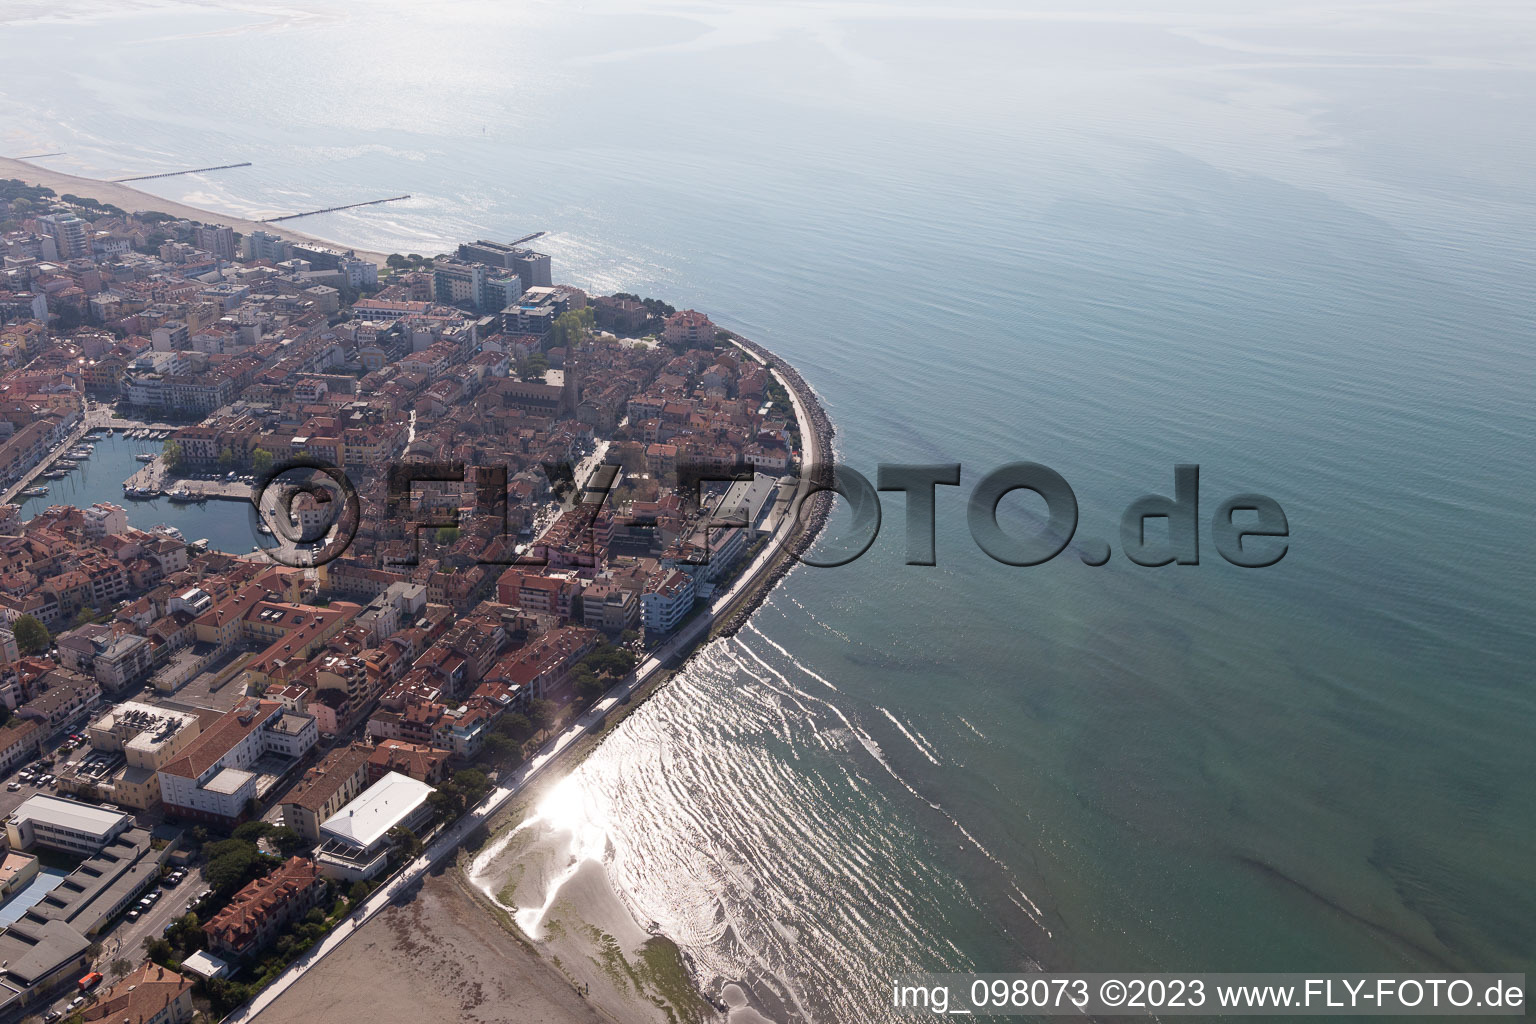 Grado in the state Friuli Venezia Giulia, Italy from above